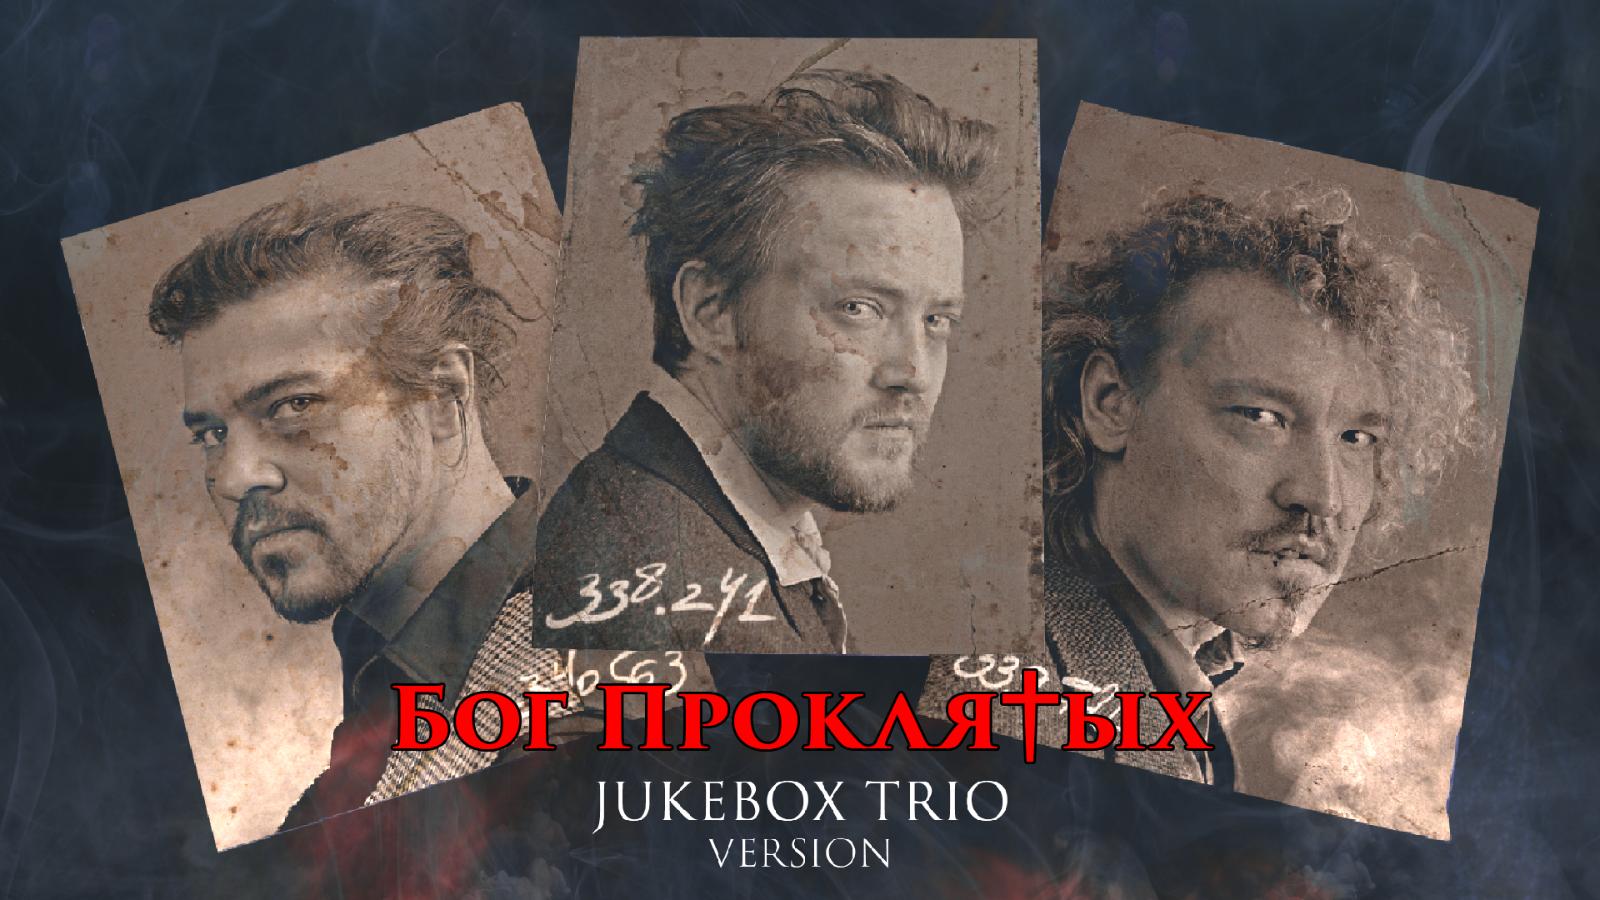 Би-2 сделали клип Jukebox trio в стиле «Острых козырьков»